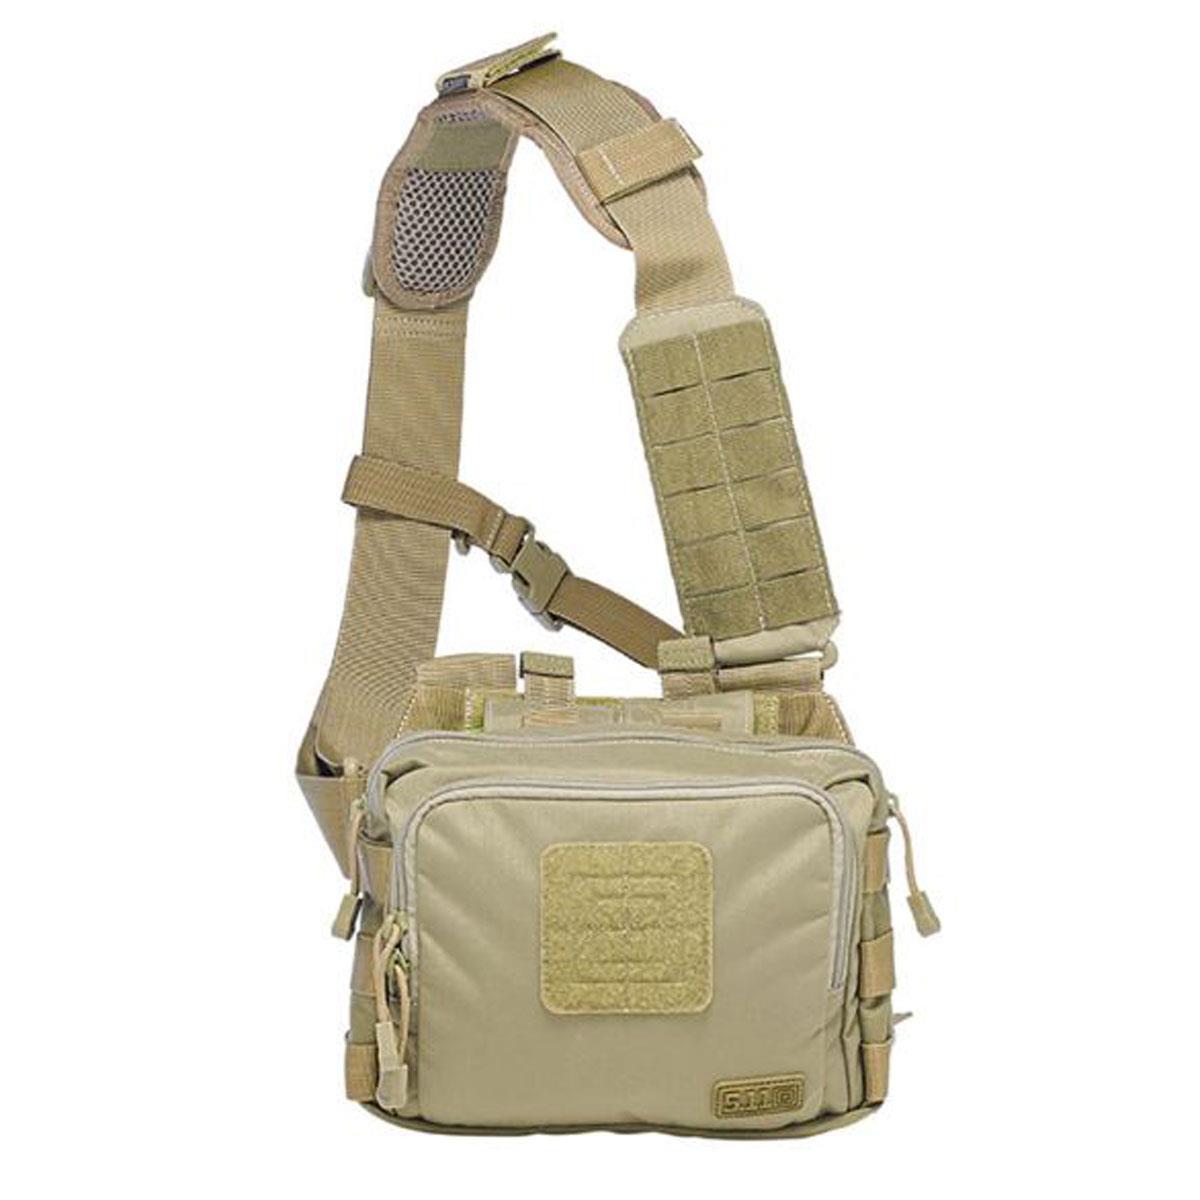 5.11 Tactical 2-Banger Magazine Bag, Sandstone -  56180-328-1 SZ